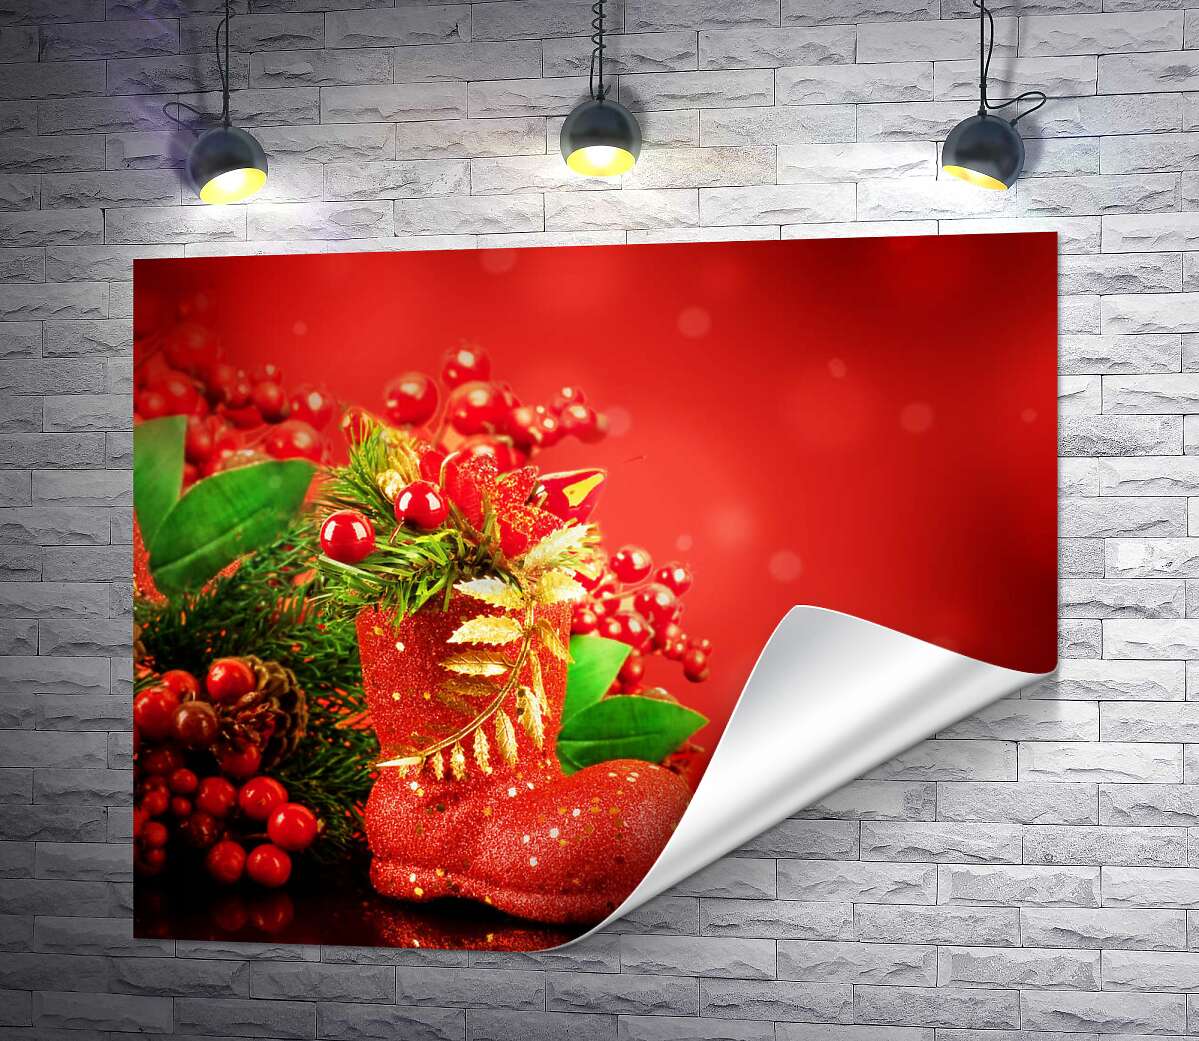 друк Червоний чобіток біля різдвяного букету з гілок ялини та ягід омели